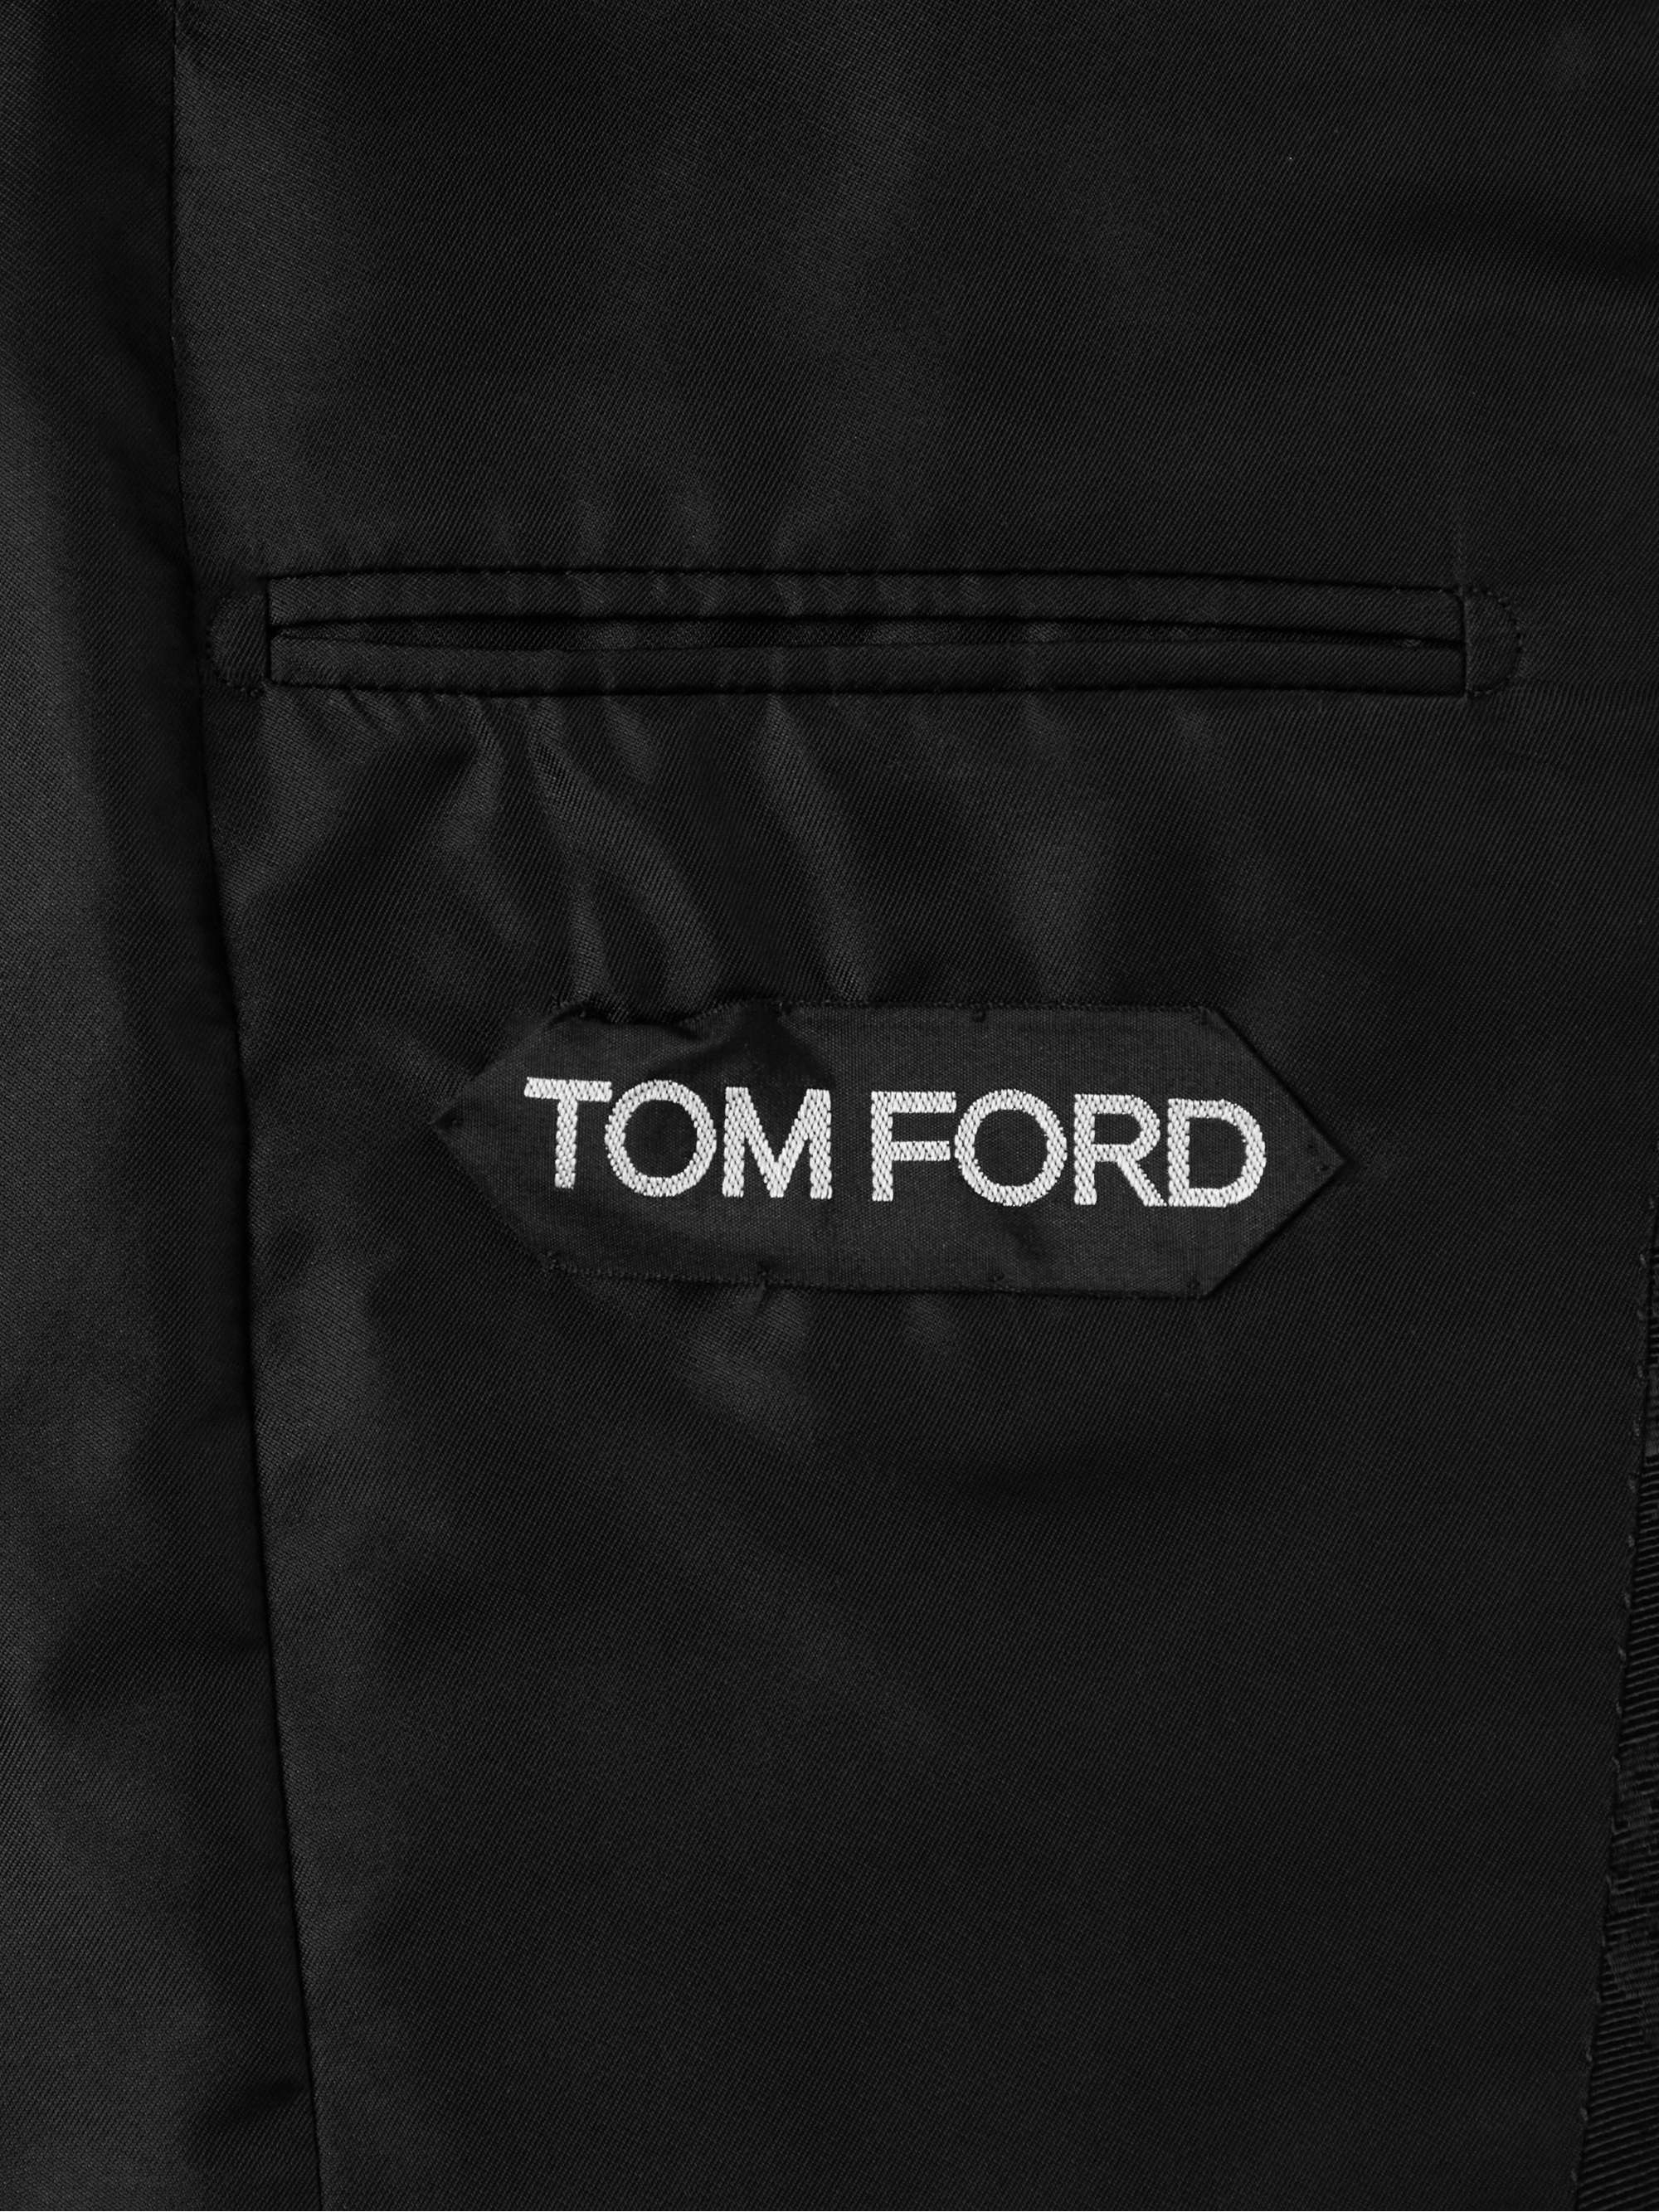 TOM FORD Shelton Satin-Jacquard Twill Tuxedo Jacket